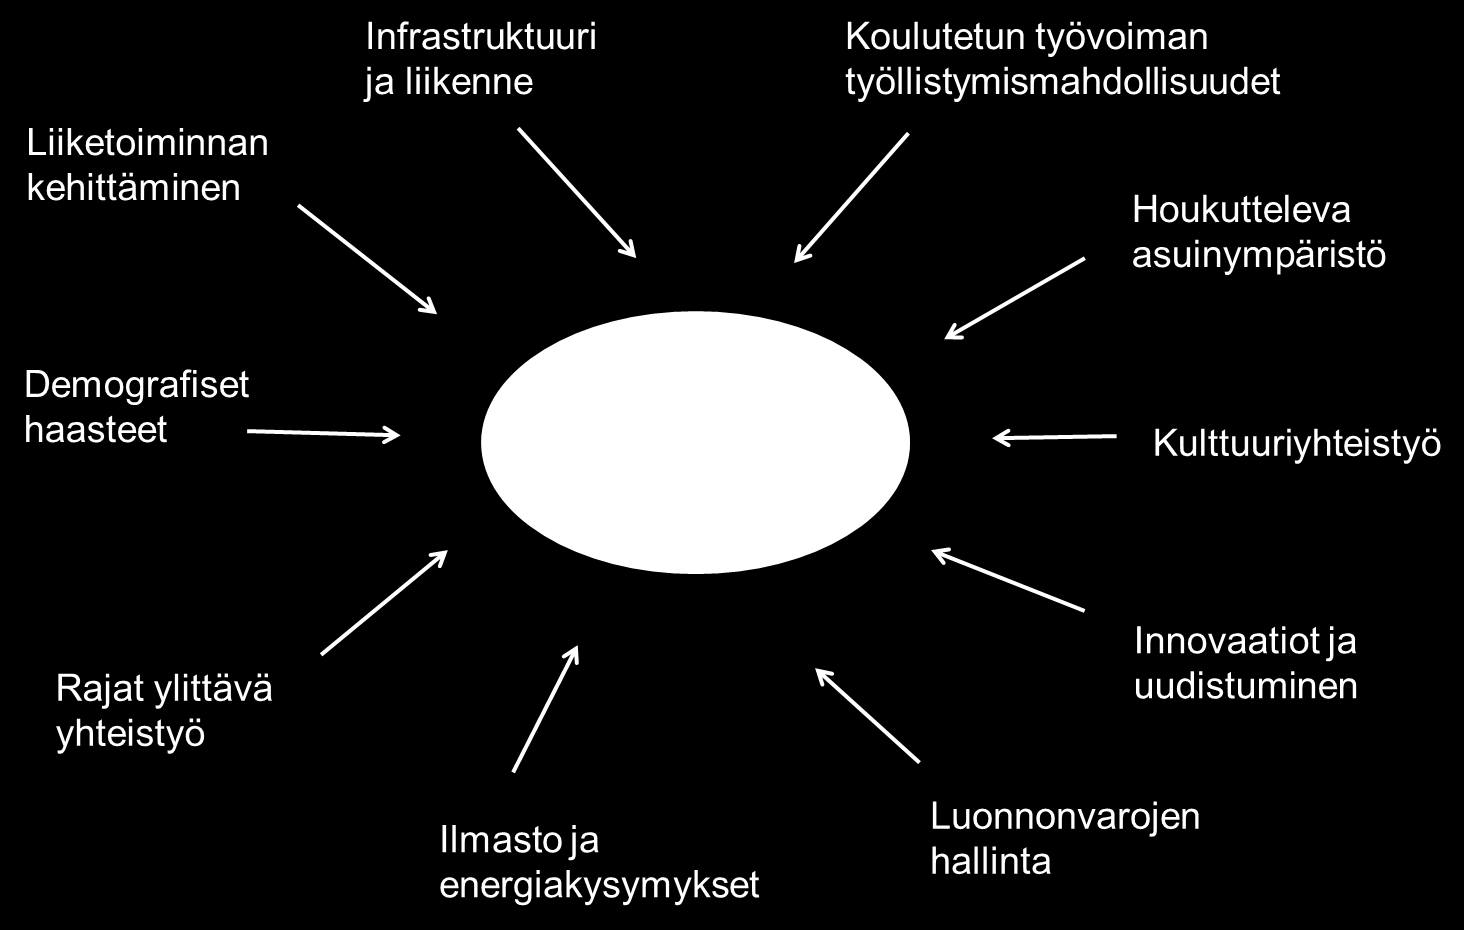 Barentsin alueen toimintaohjelma 2014-2018 (alueellinen) Barentsin alueen kehitys Tavoitteet: Luovien ja nopeasti kasvavien yritysten toiminnan edistäminen Rajat ylittävän yhteistyön tehostaminen